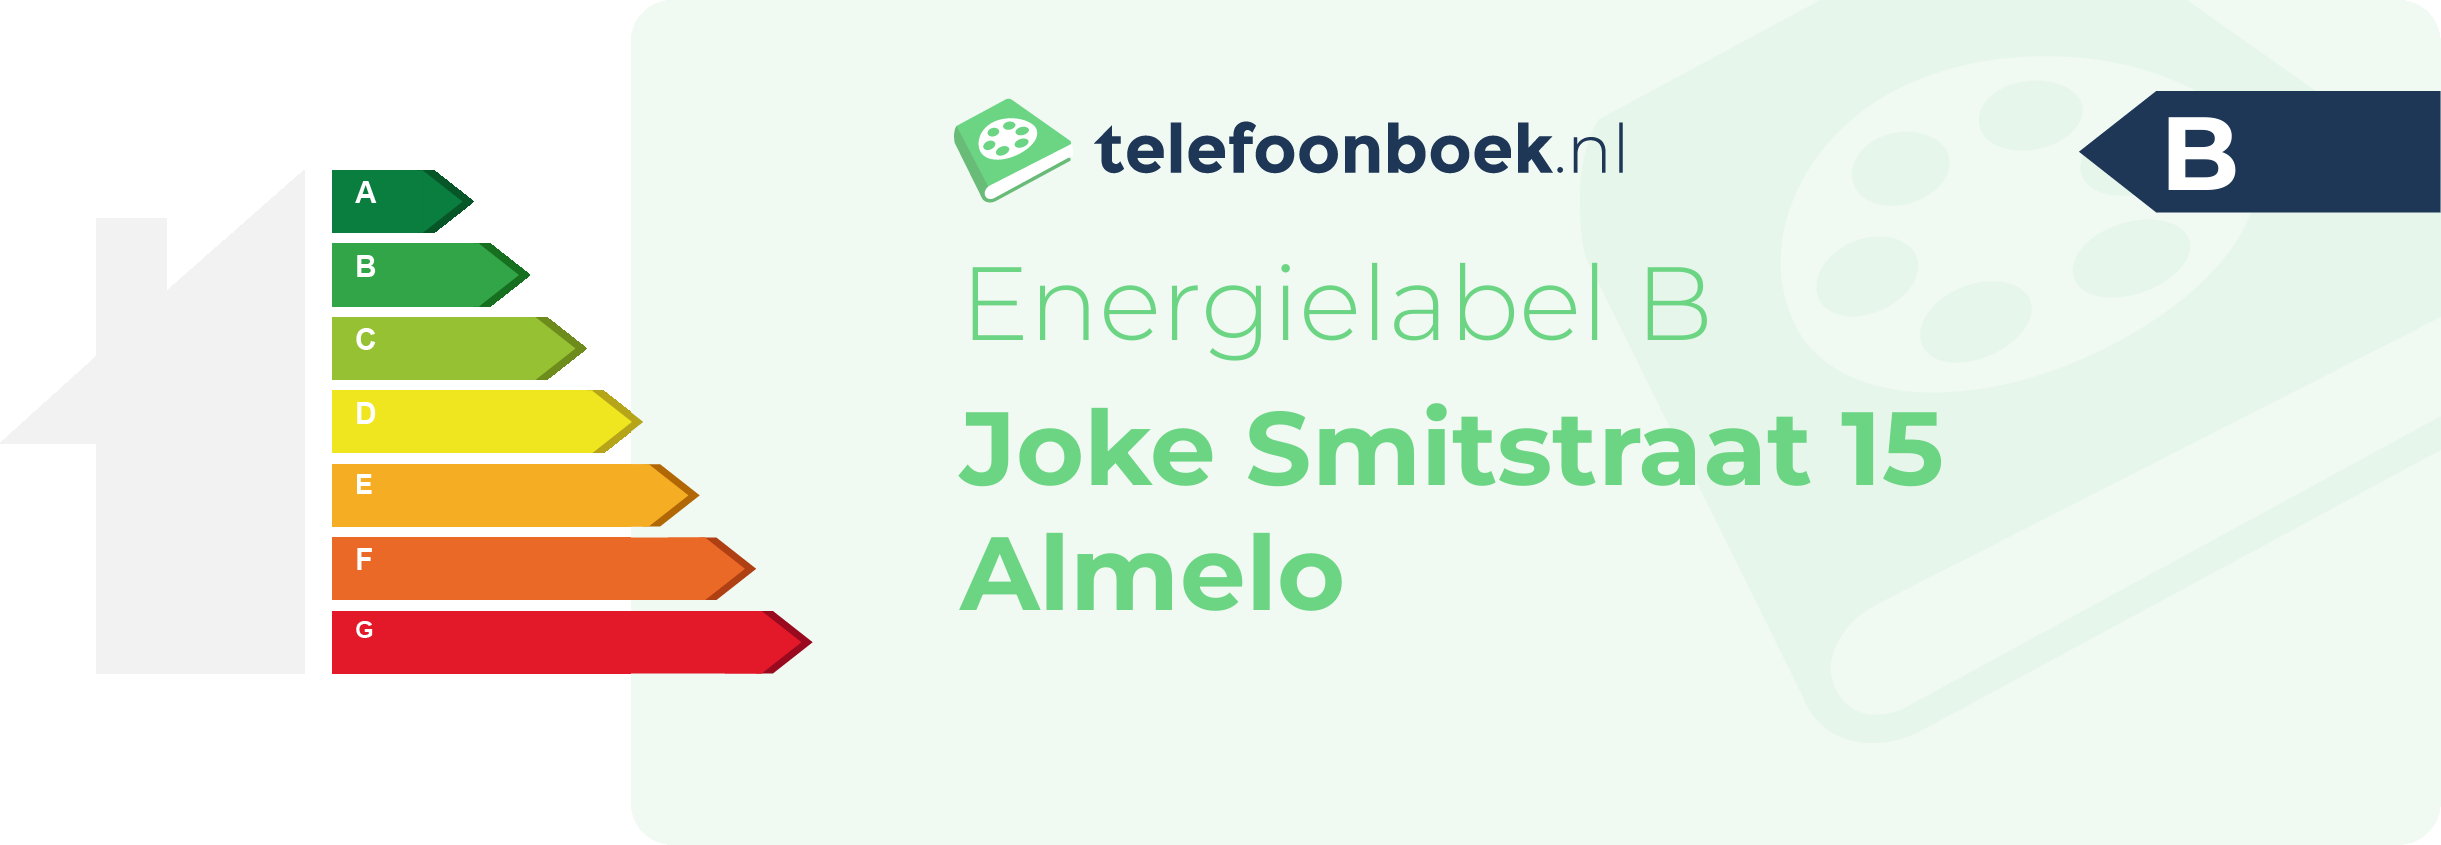 Energielabel Joke Smitstraat 15 Almelo